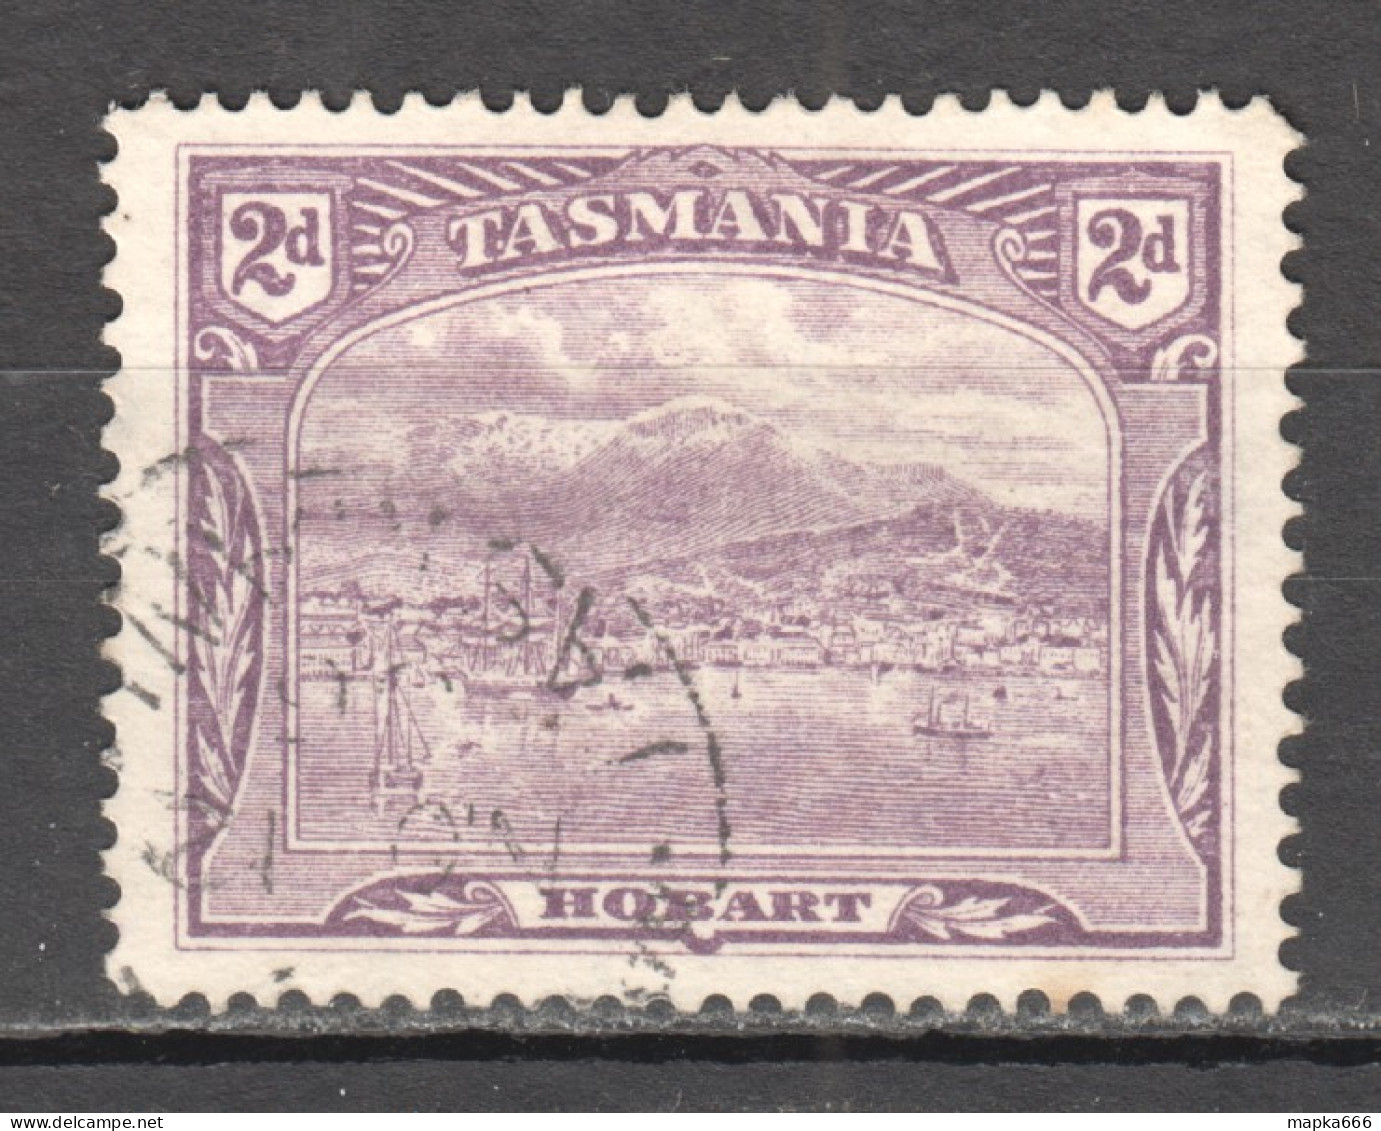 Tas218 1905 Australia Tasmania Gibbons Sg #251 1St Used - Used Stamps